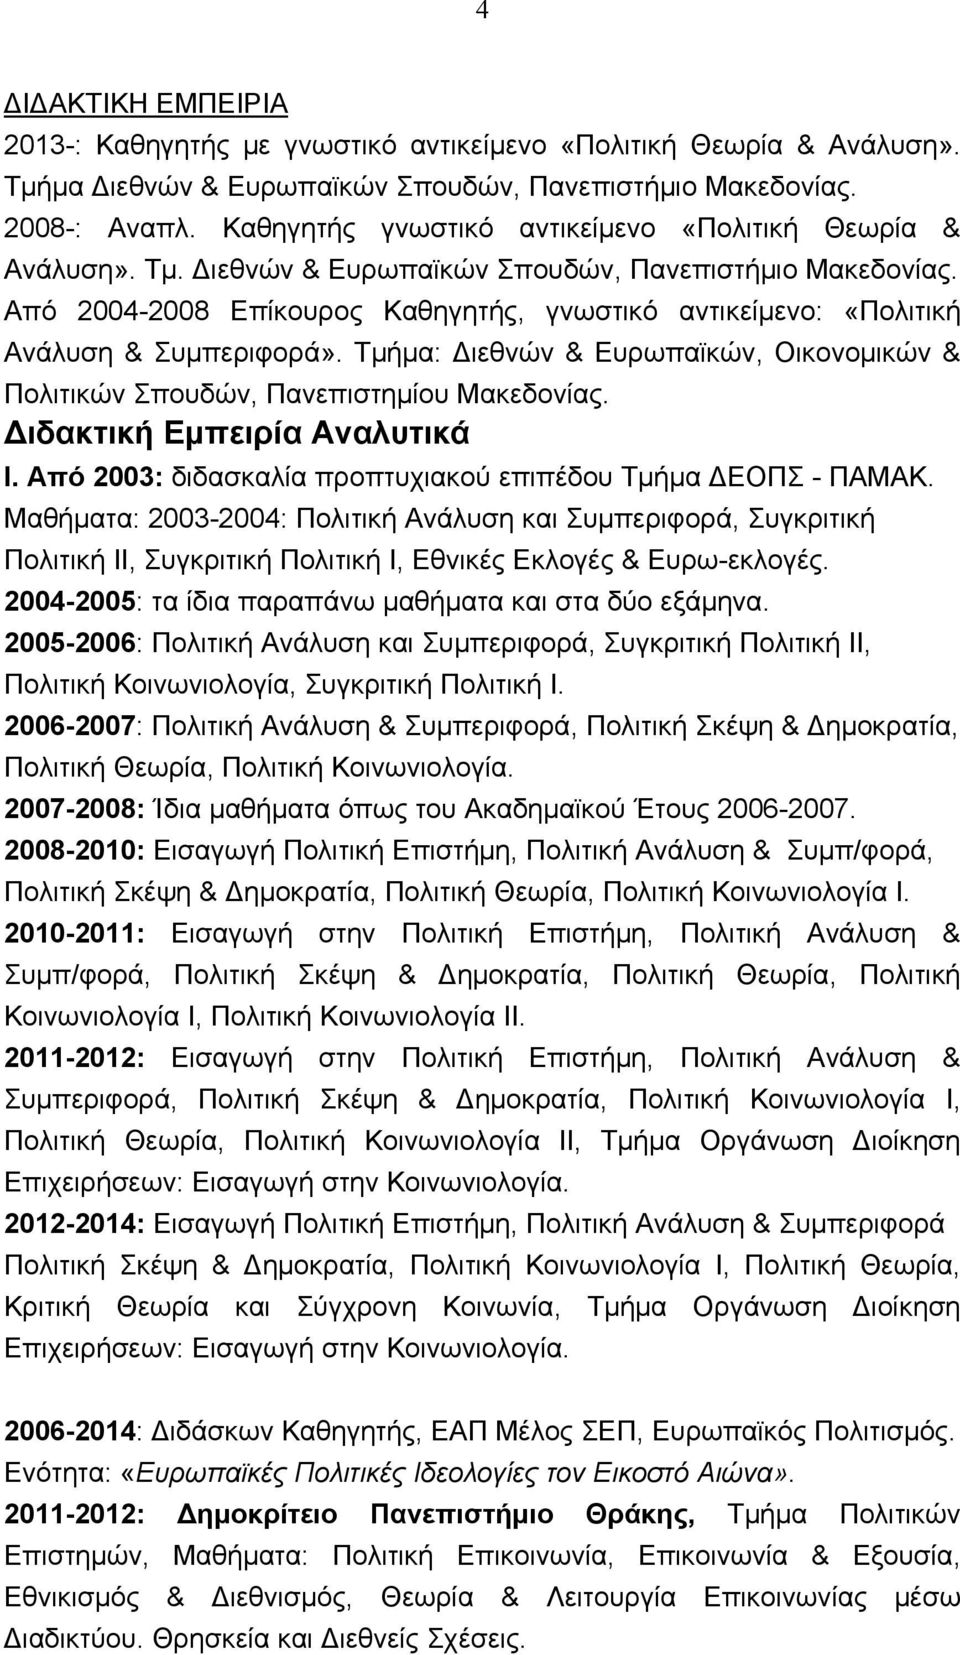 Από 2004-2008 Επίκουρος Καθηγητής, γνωστικό αντικείμενο: «Πολιτική Ανάλυση & Συμπεριφορά». Τμήμα: Διεθνών & Ευρωπαϊκών, Οικονομικών & Πολιτικών Σπουδών, Πανεπιστημίου Μακεδονίας.